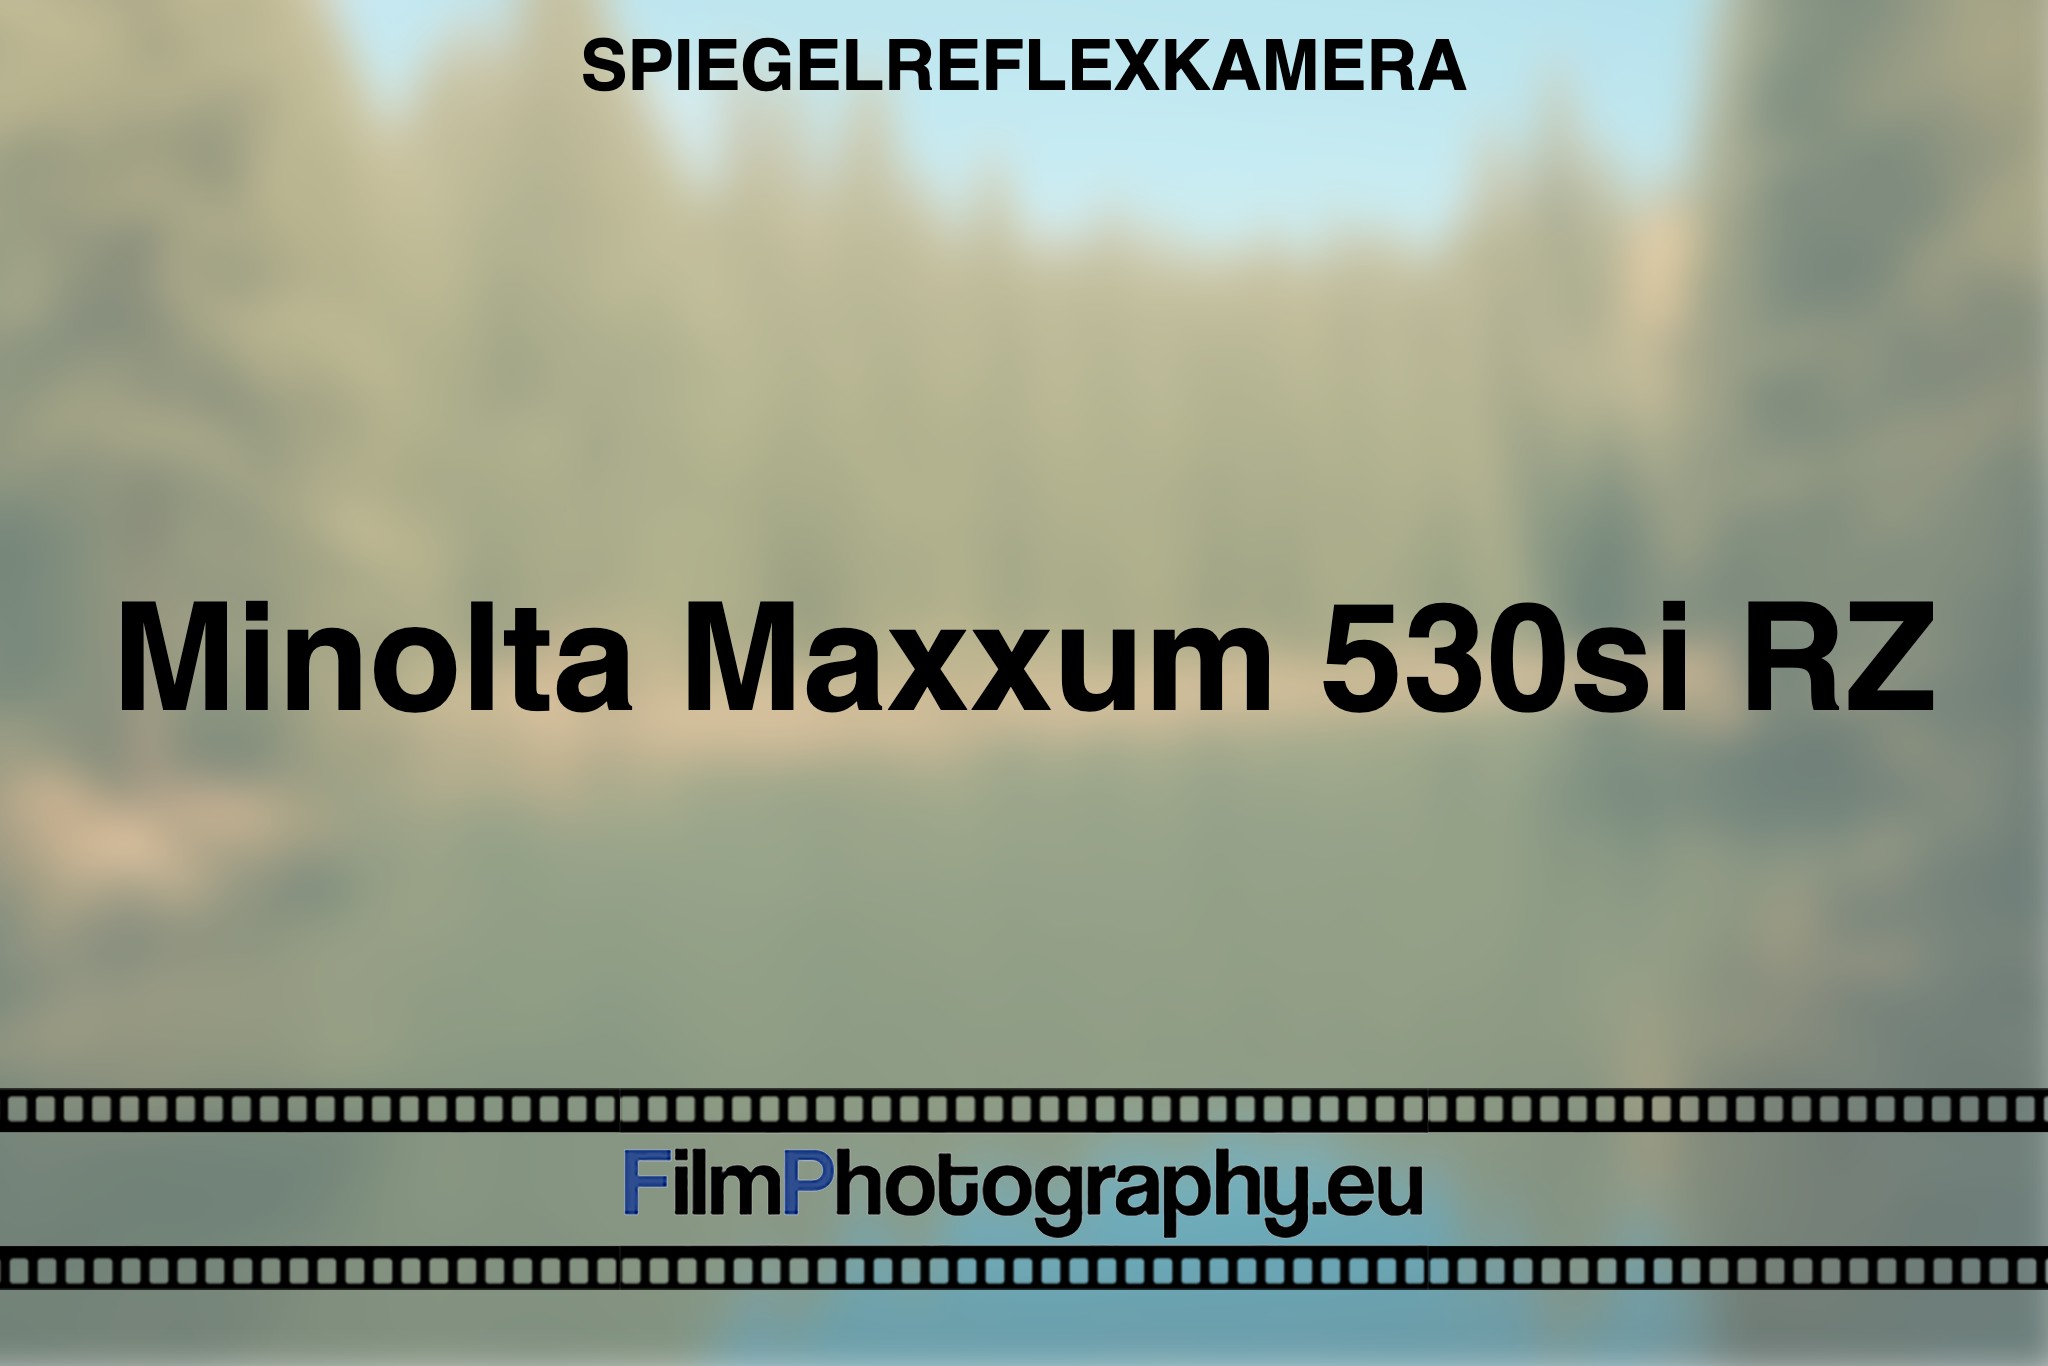 minolta-maxxum-530si-rz-spiegelreflexkamera-bnv